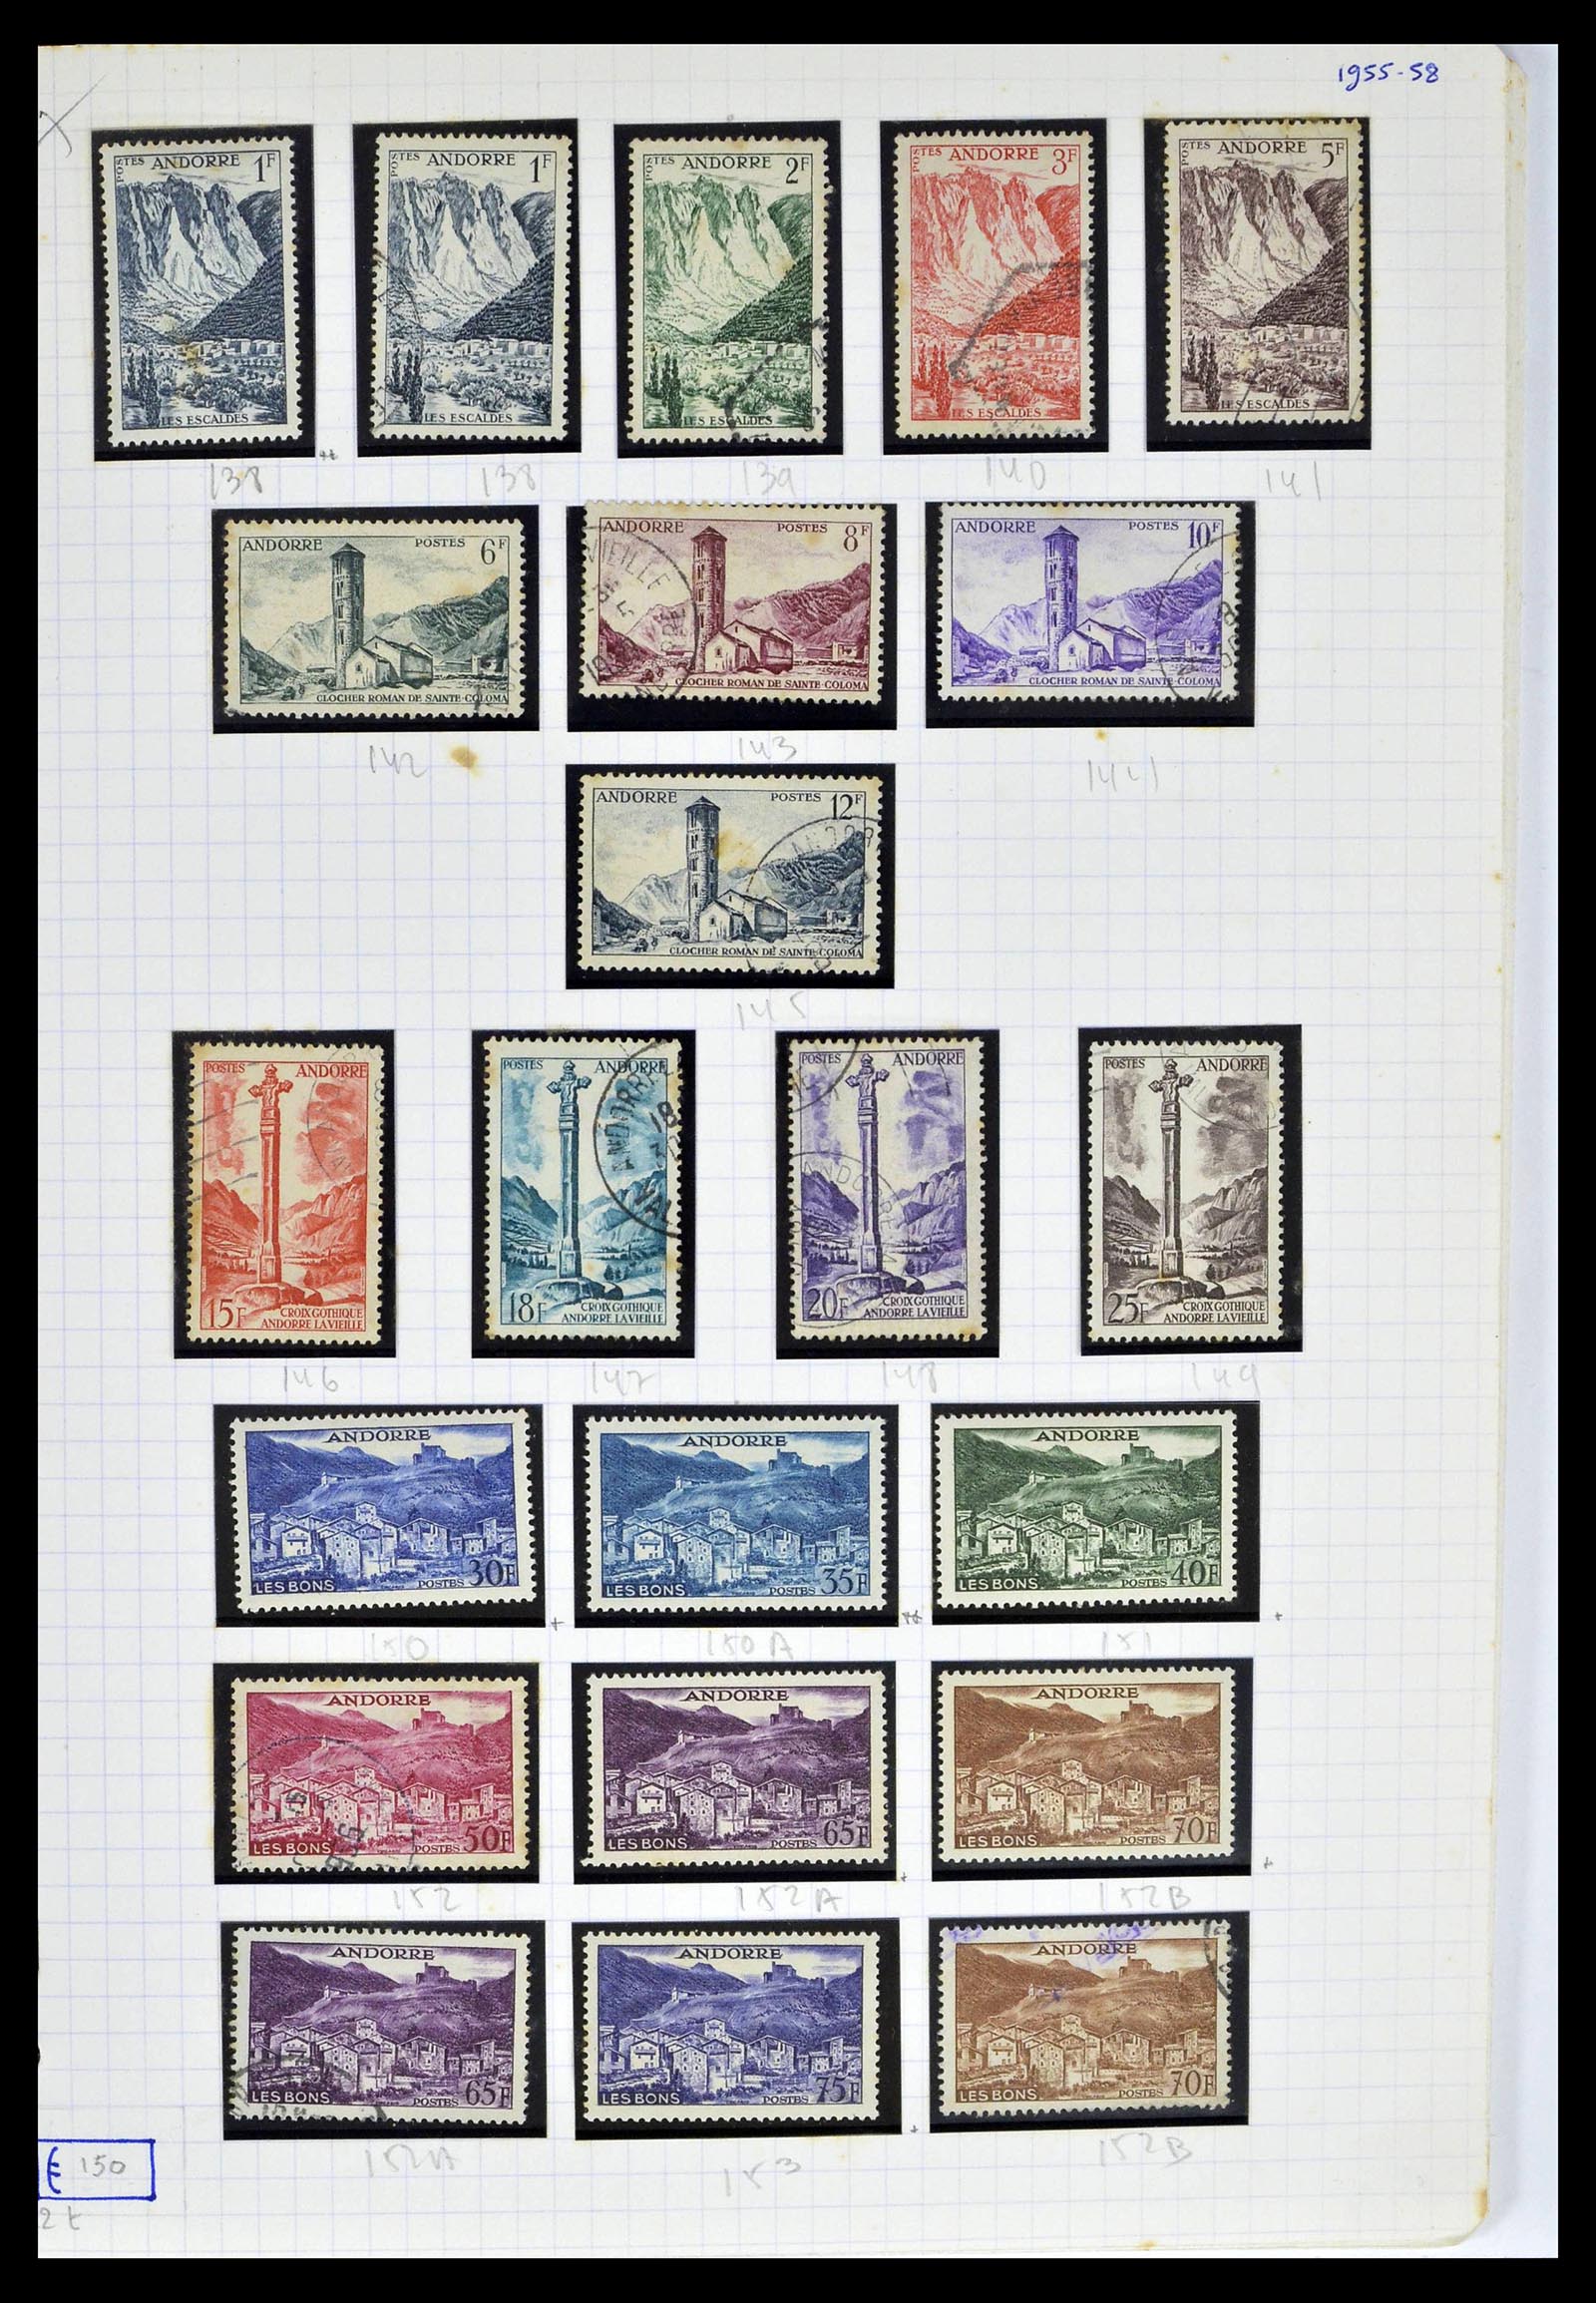 39232 0013 - Postzegelverzameling 39232 Frans Andorra 1931-2013.